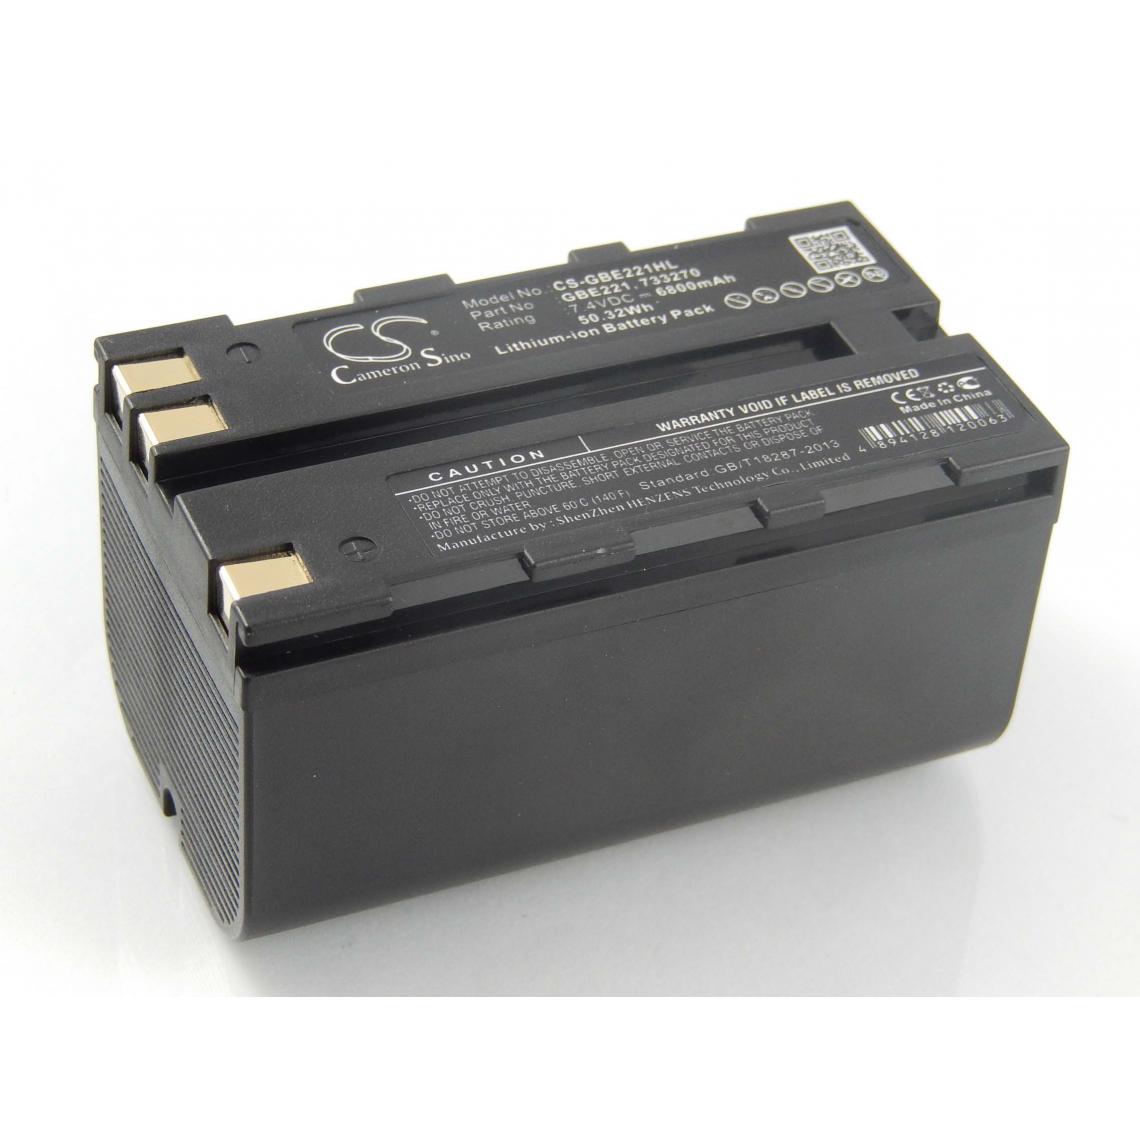 Vhbw - vhbw Batterie compatible avec Geomax Zoom 80, Zoom ZT80+, ZT80+ dispositif de mesure laser, outil de mesure (6800mAh, 7,4V, Li-ion) - Piles rechargeables